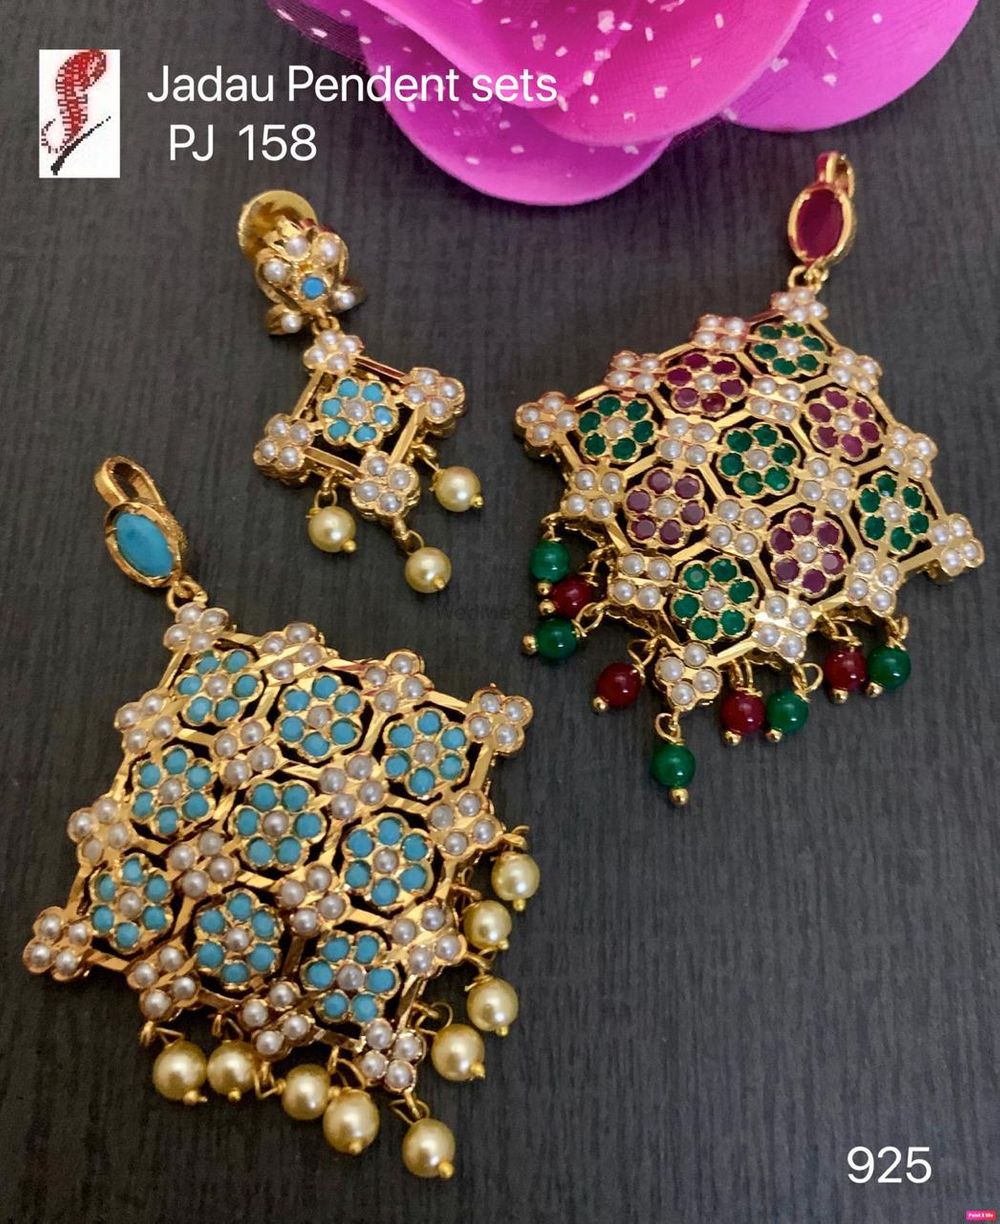 Photo From Jadau jewels - By Jain Jewels